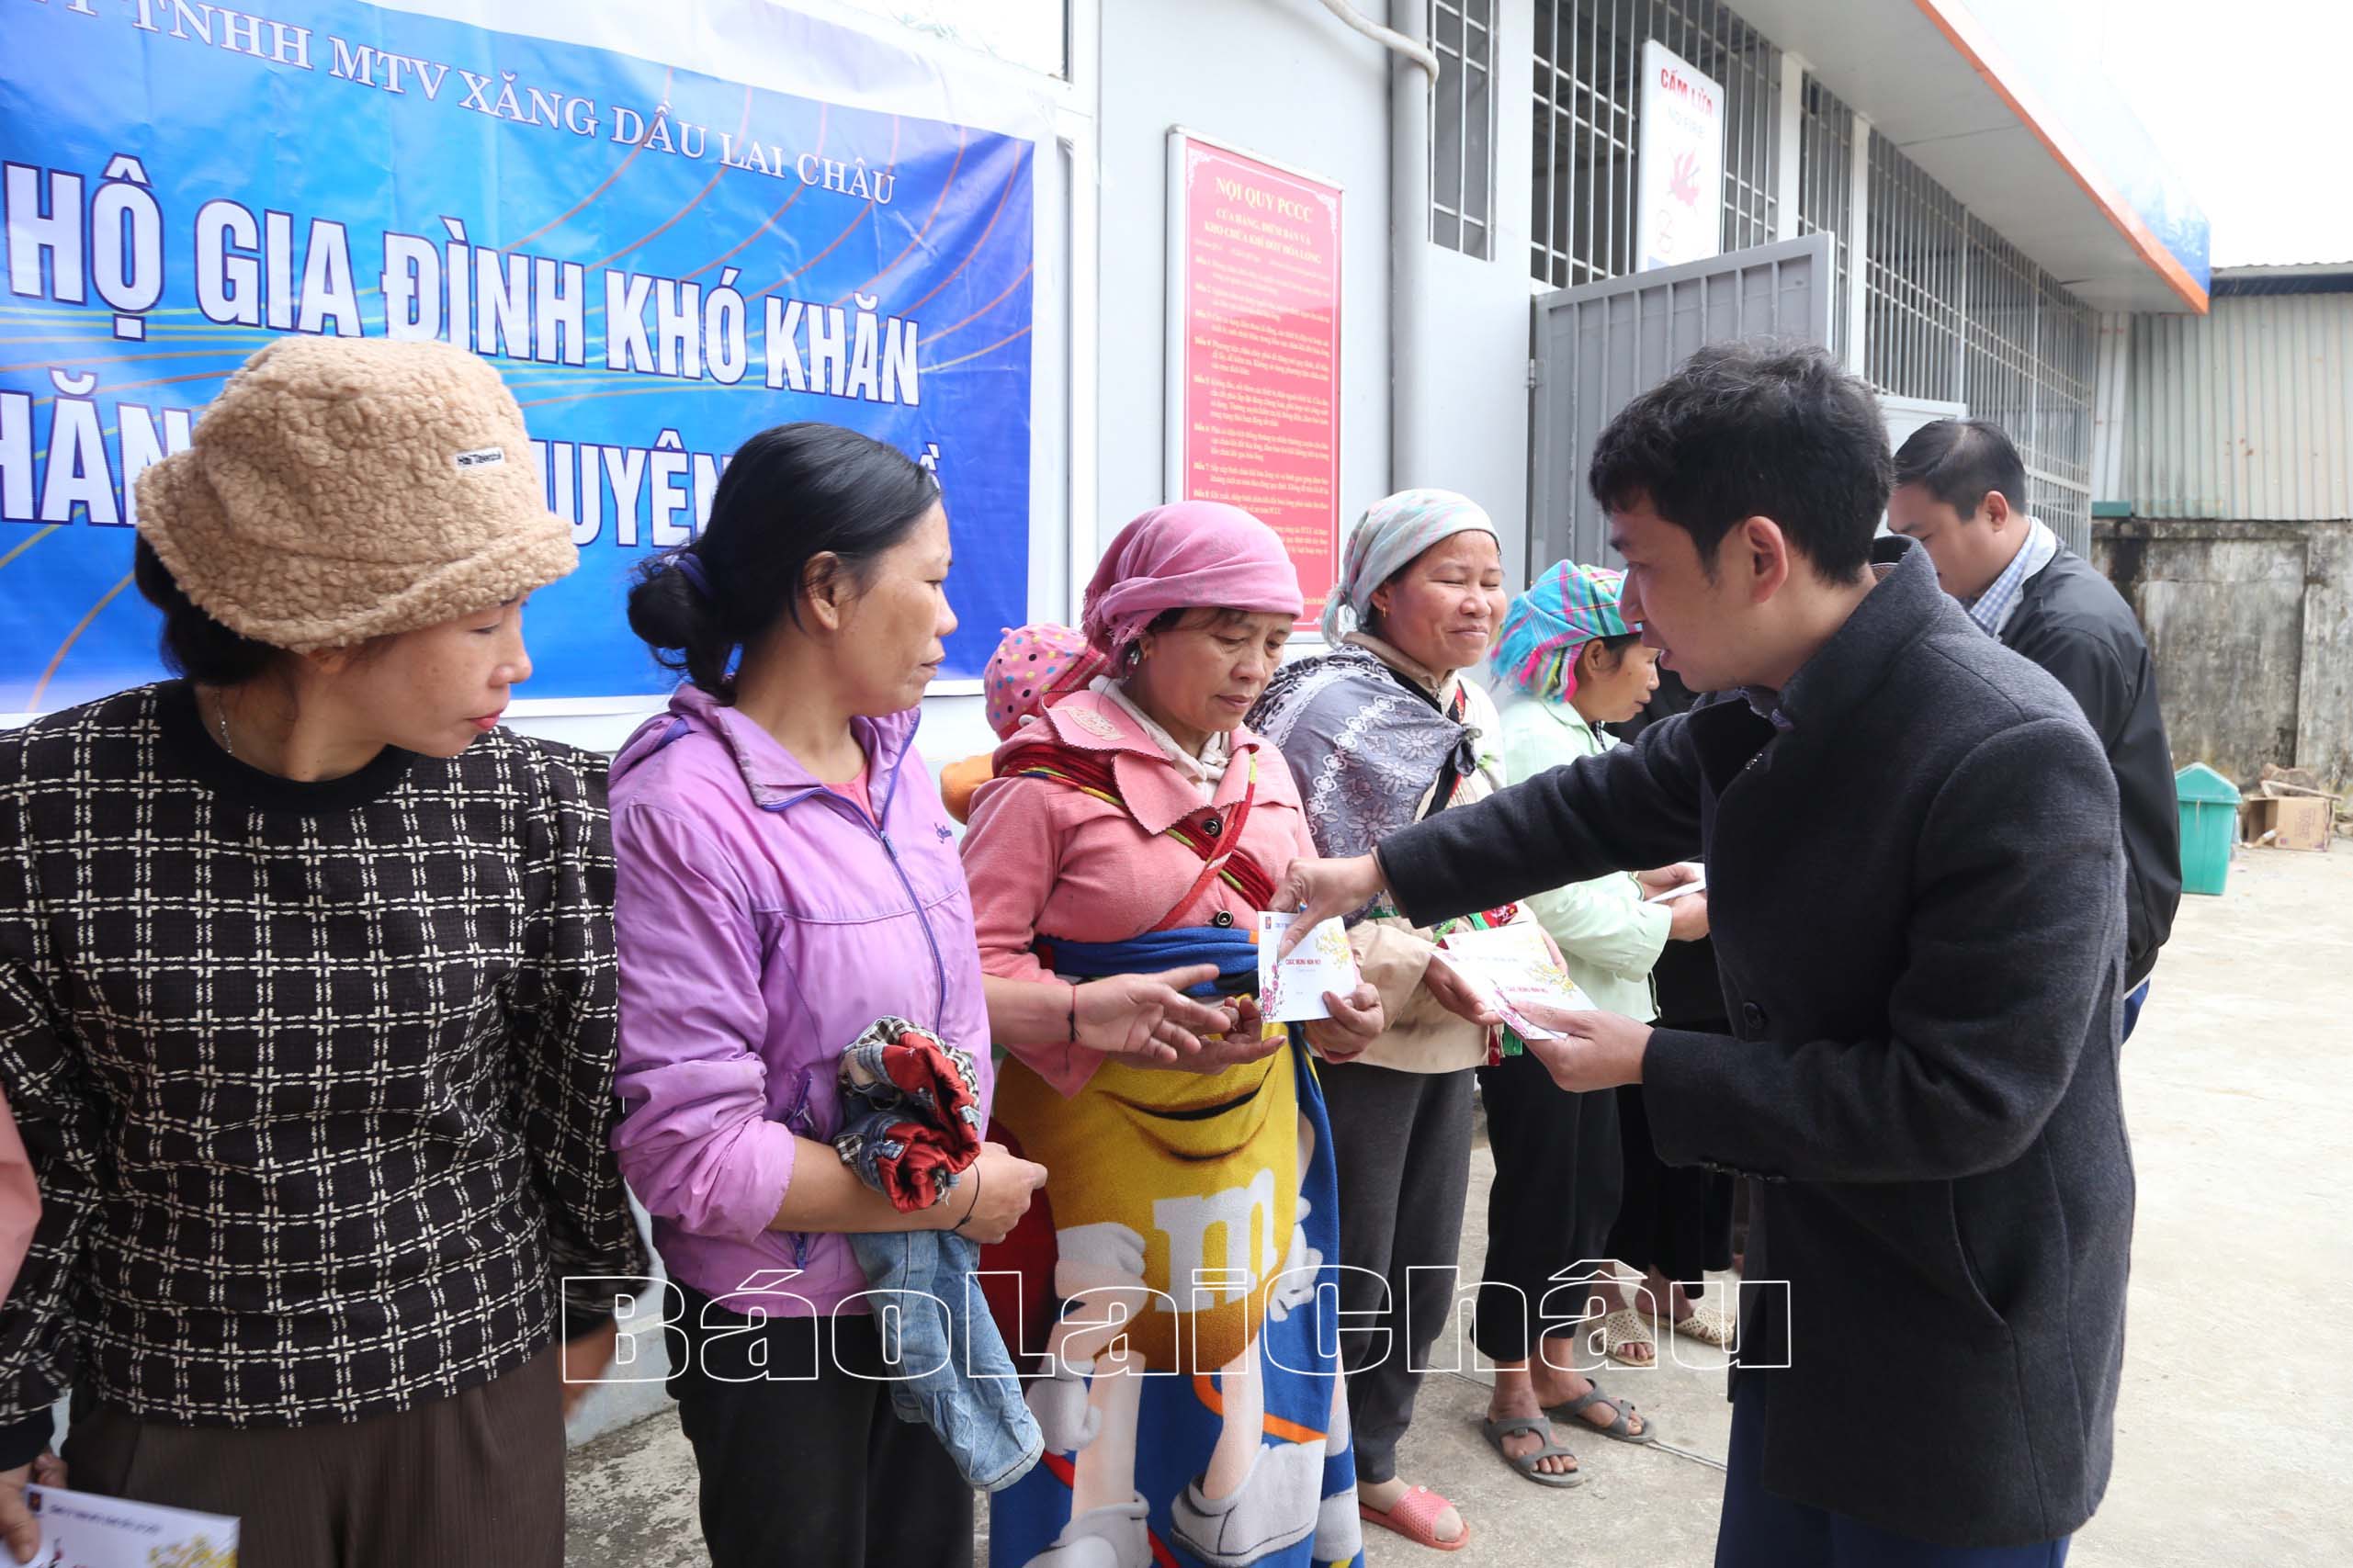 Đồng chí Trần Huy Quyền – Phó Giám đốc Công ty Xăng dầu Lai Châu trao quà tết cho các hộ nghèo xã Chăn Nưa (huyện Sìn Hồ). 